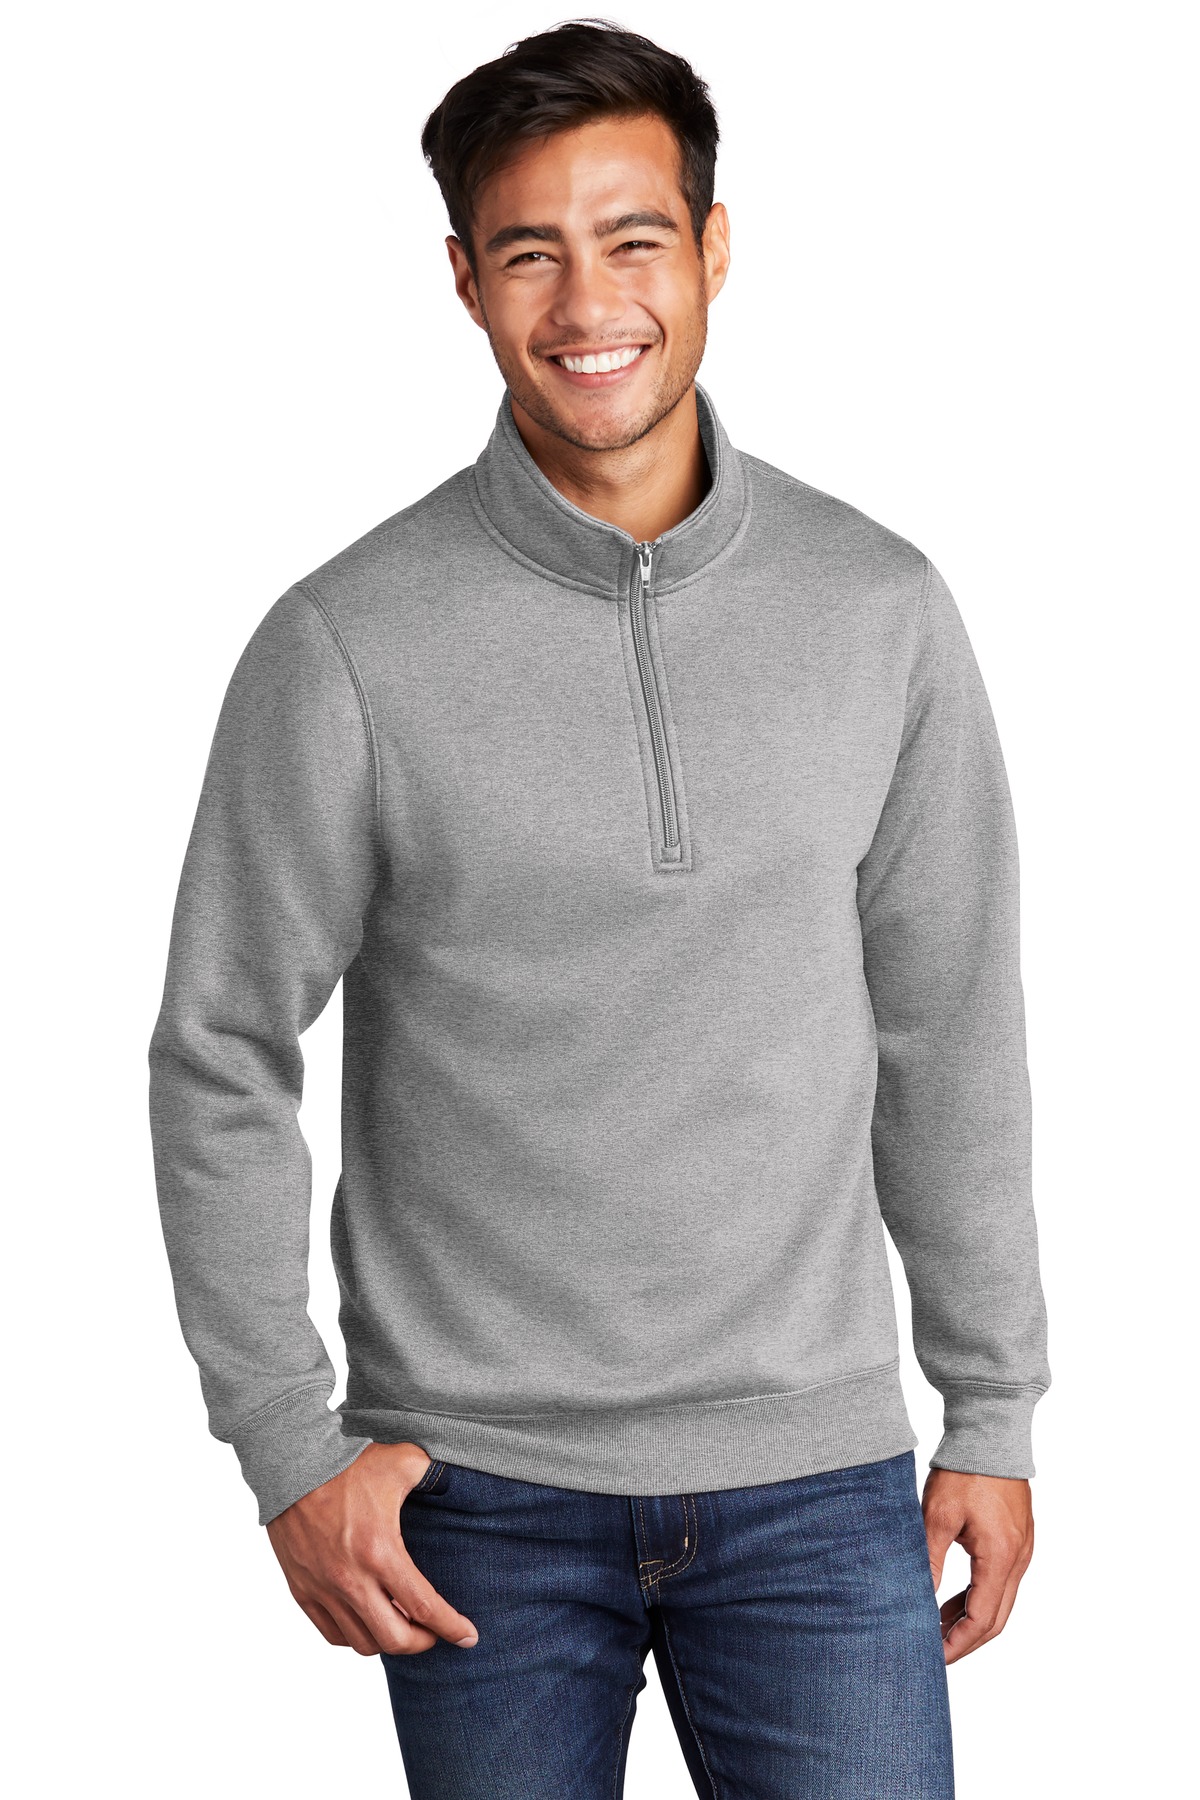 Port & Company Core Fleece 1/4-Zip Pullover Sweatshirt PC78Q